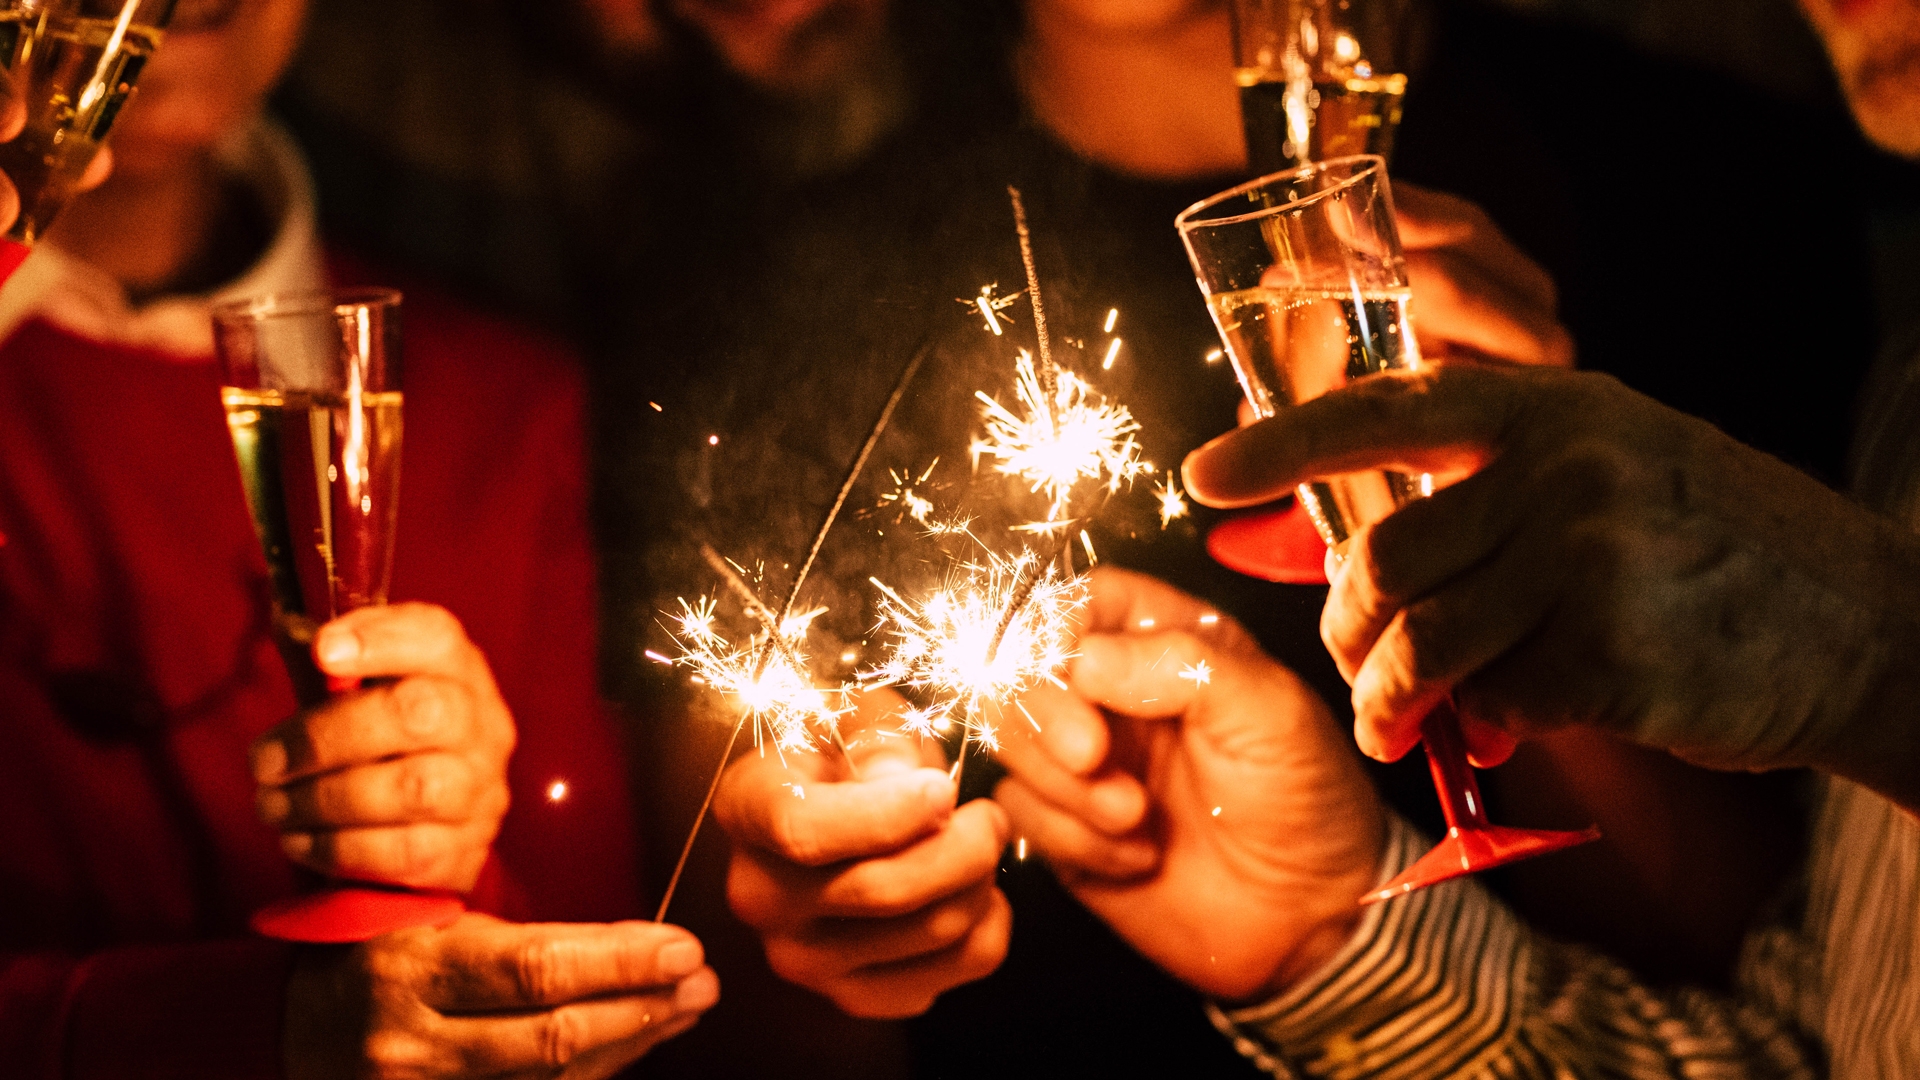 Paix, solidarité et feux d’artifice  pour la nouvelle année : vive 2023 !